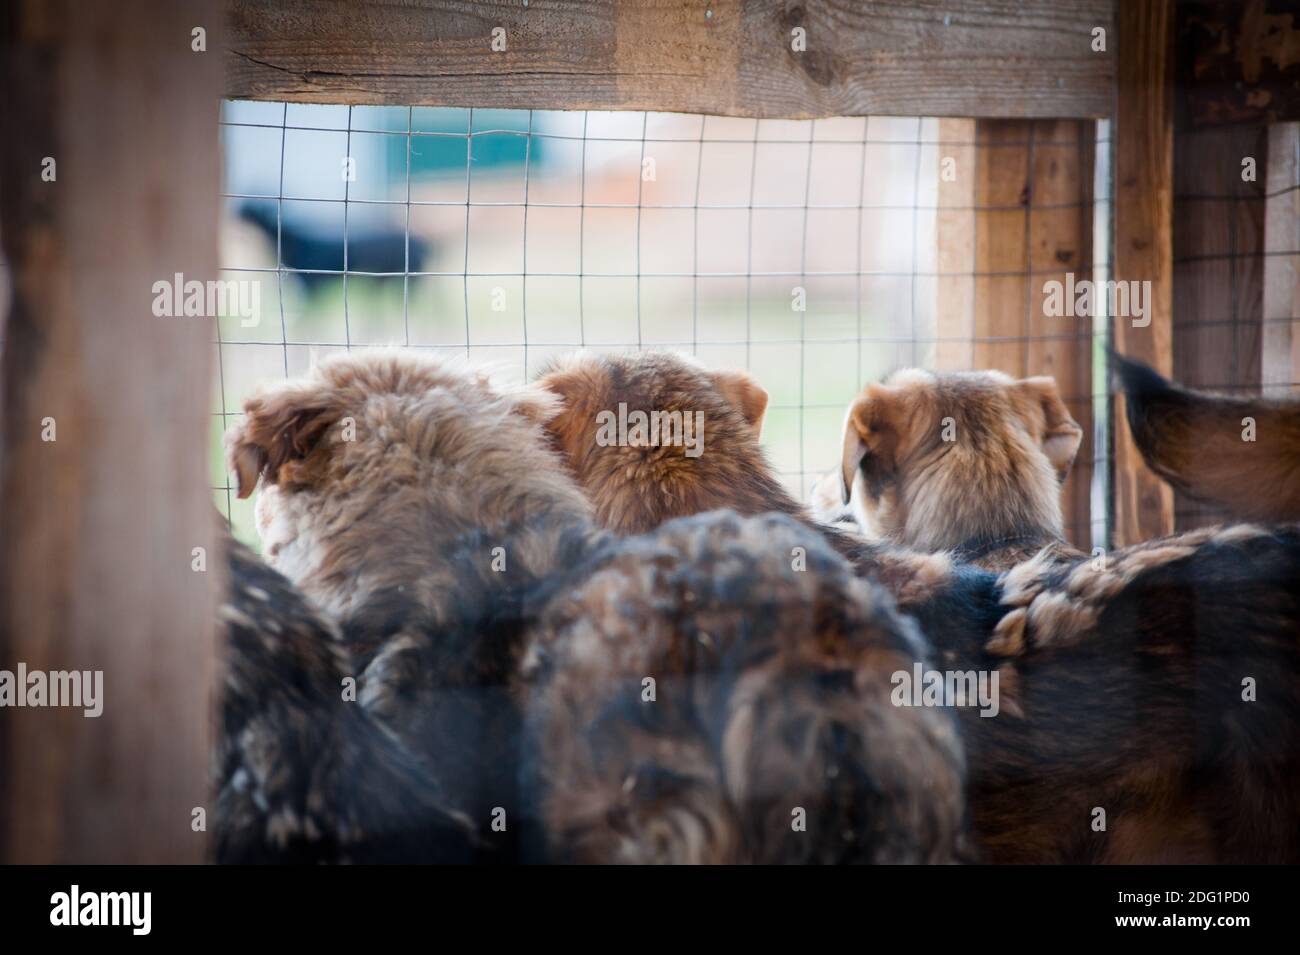 Jeunes chiens secourus dans un abri pour chiens dans une cage en attente leurs nouvelles maisons Banque D'Images